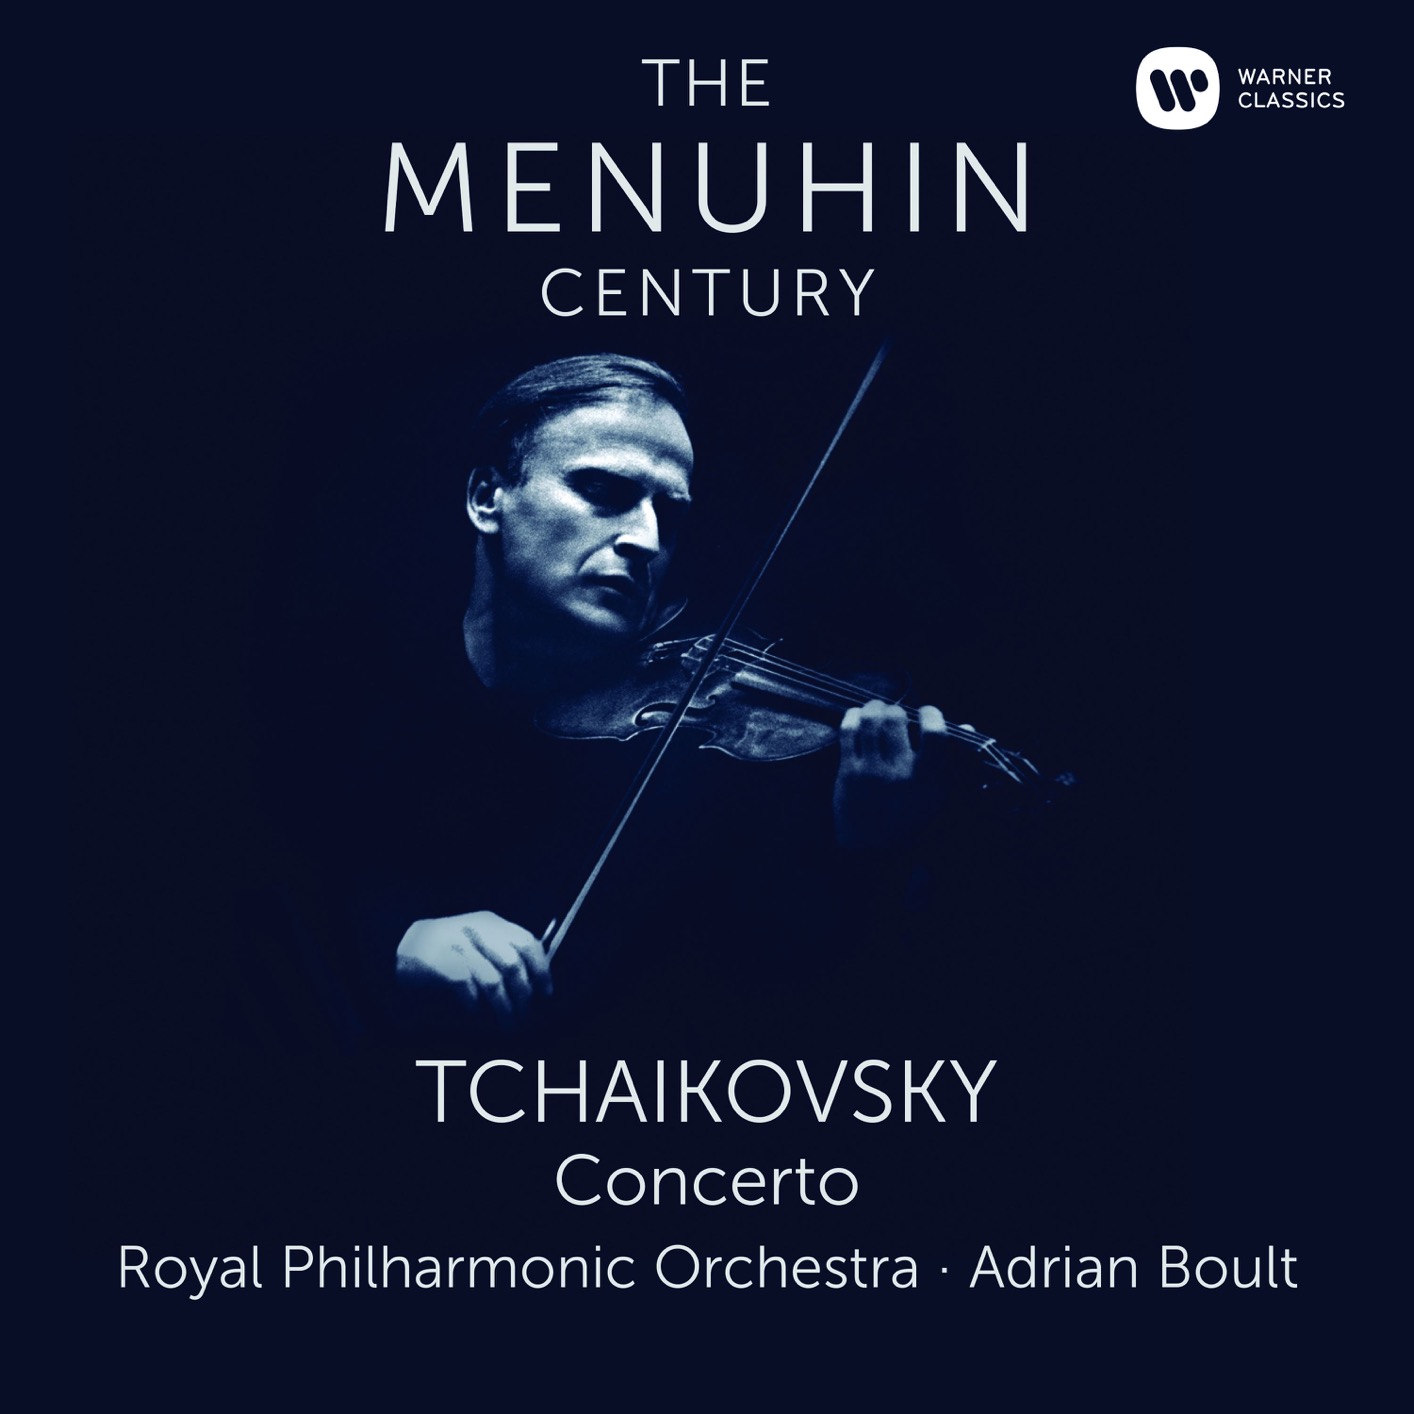 Violin Album of Yehudi Menuhin buy or stream. | HIGHRESAUDIO